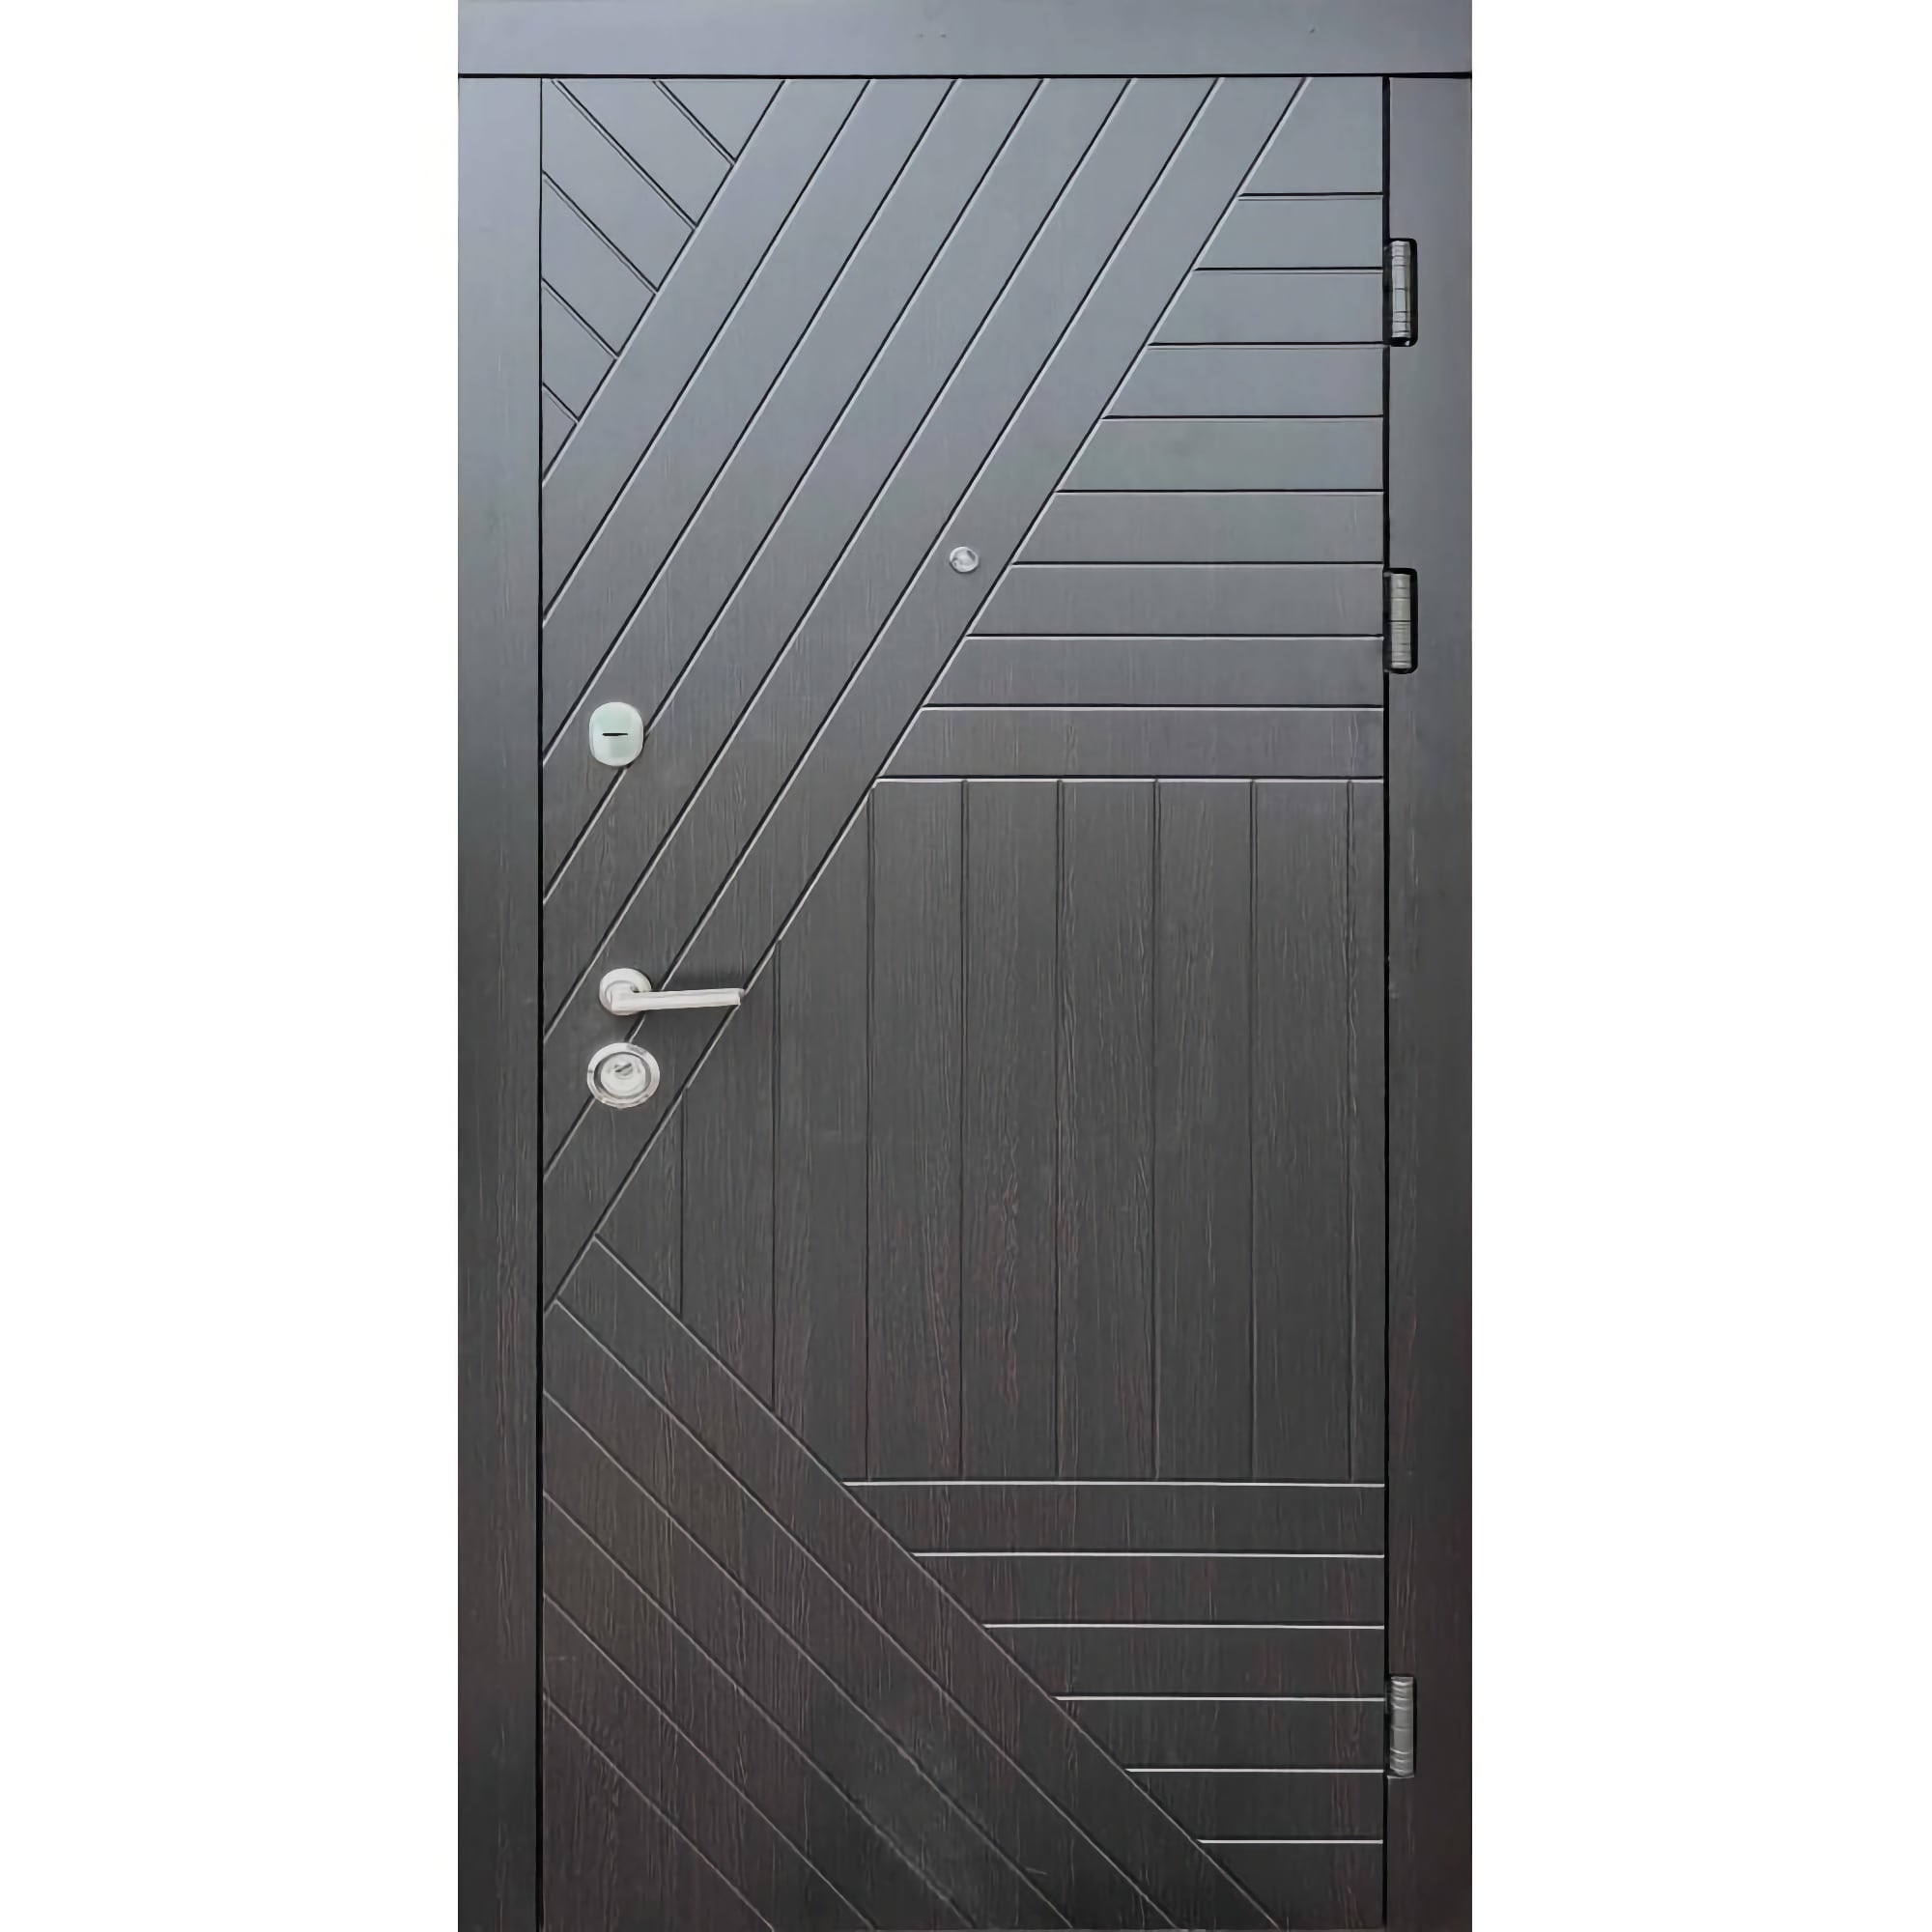 МДФ входные двери с установкой и монтажом в каталоге на складе - Стандарт плюс Легион 860